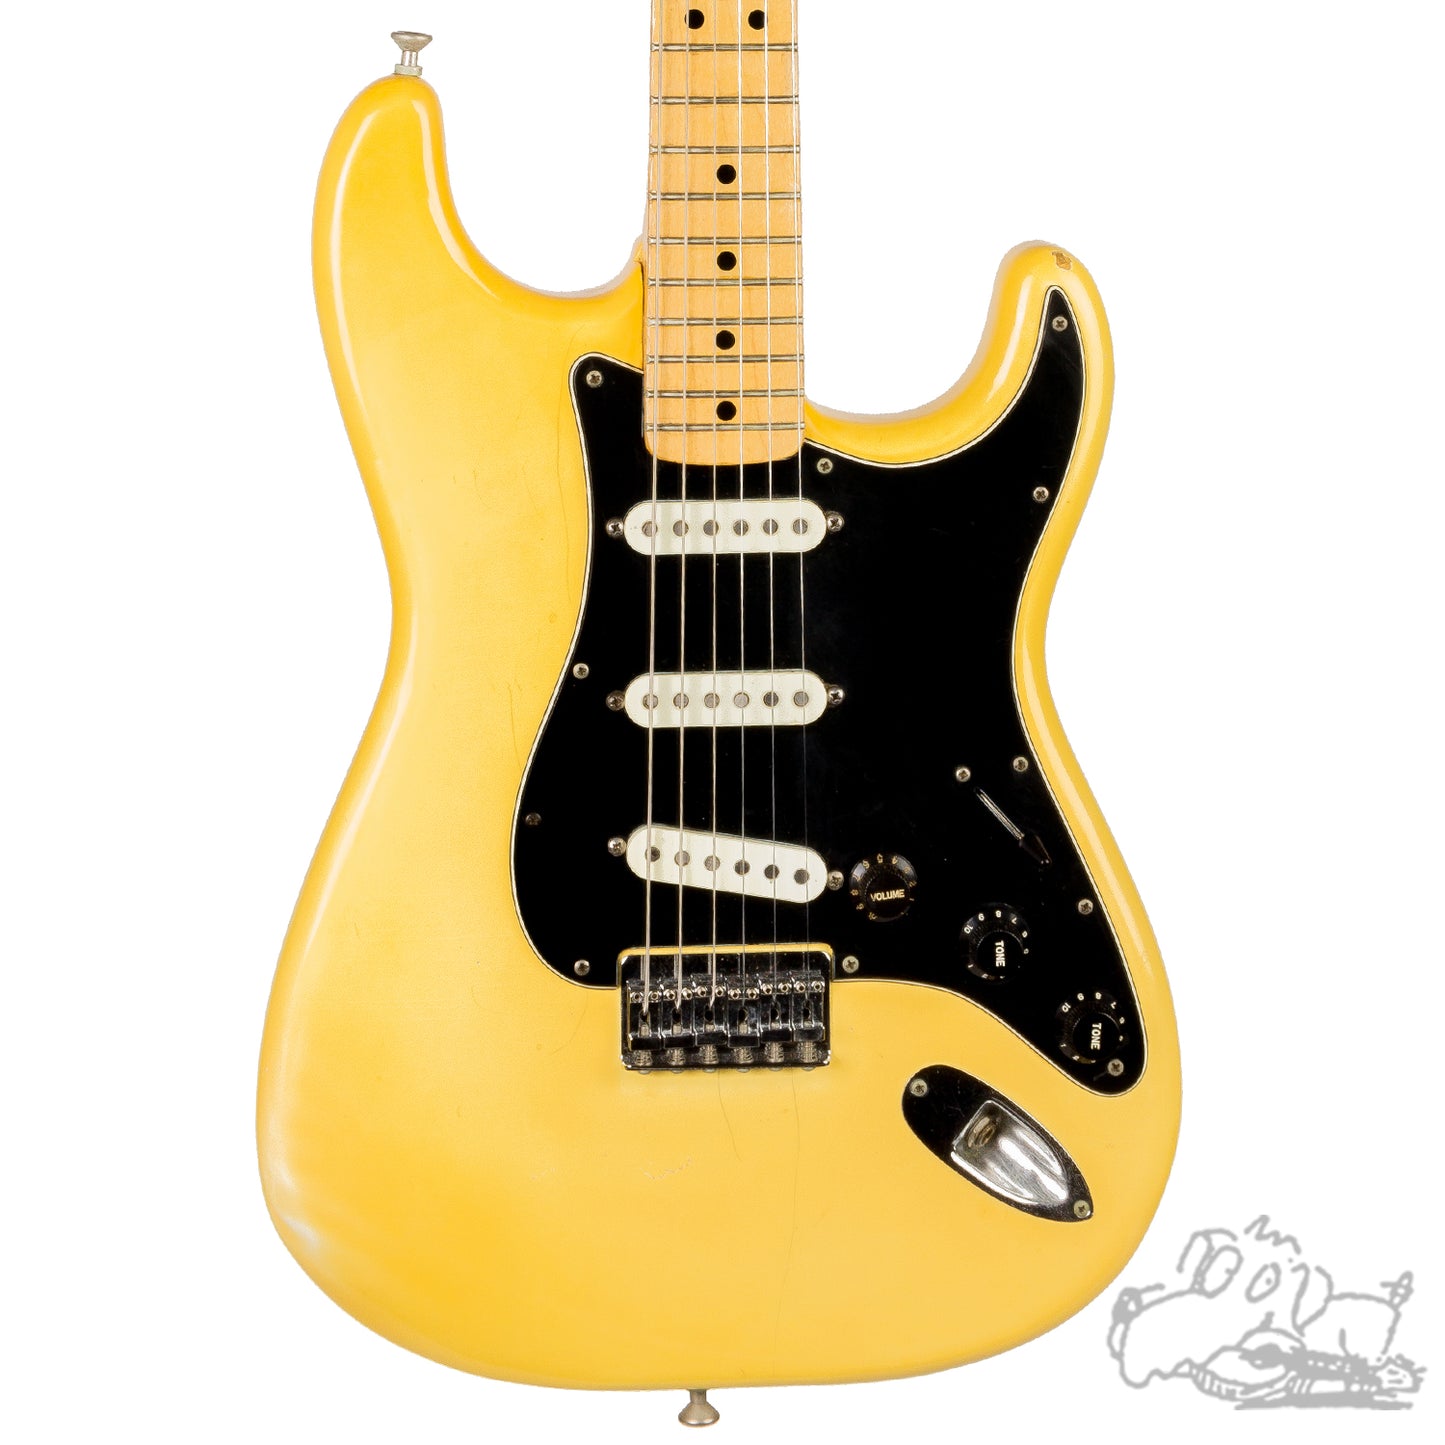 1975 Fender Stratocaster - Hardtail